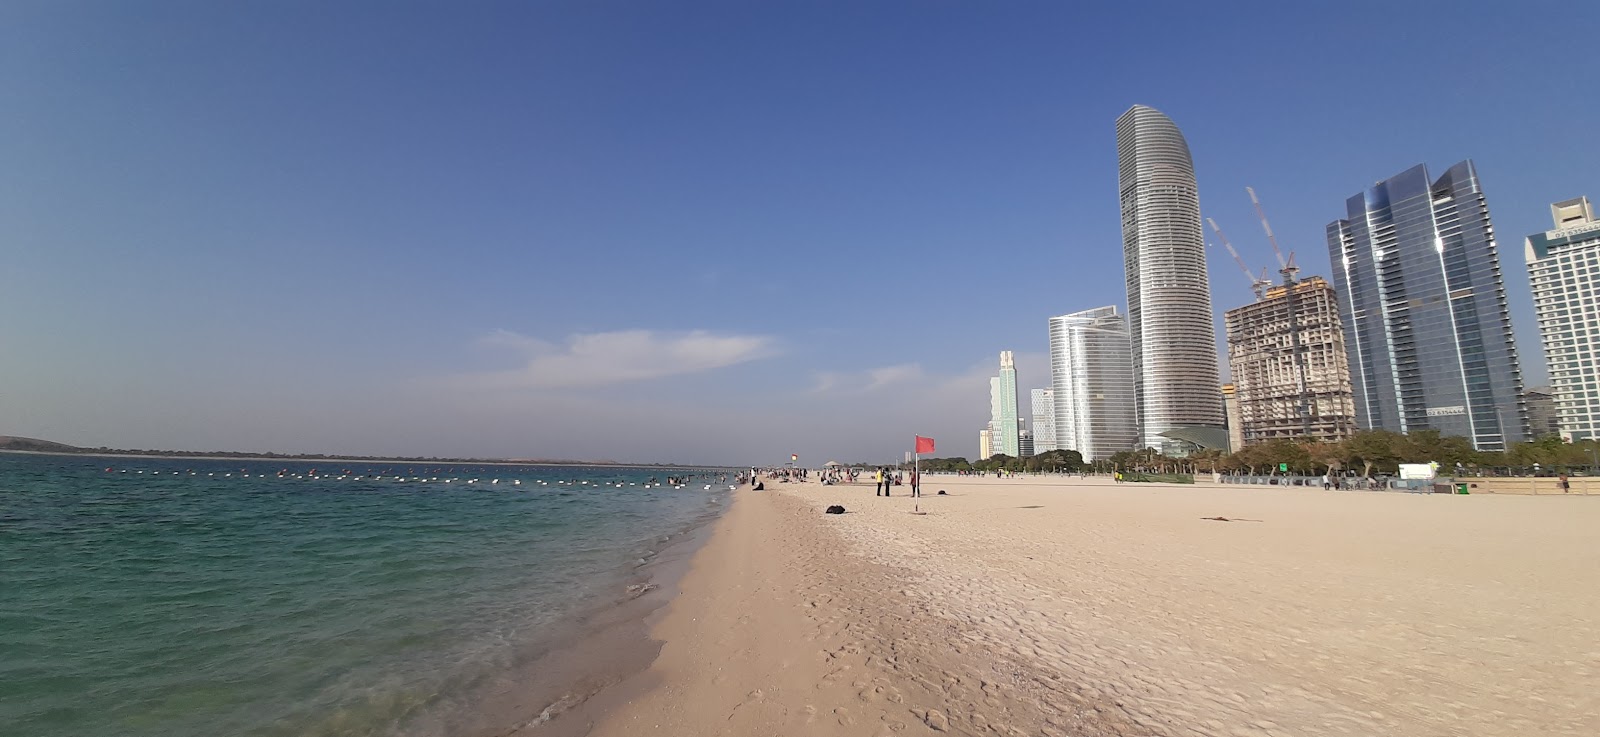 Fotografie cu Abu Dhabi beach cu plajă spațioasă